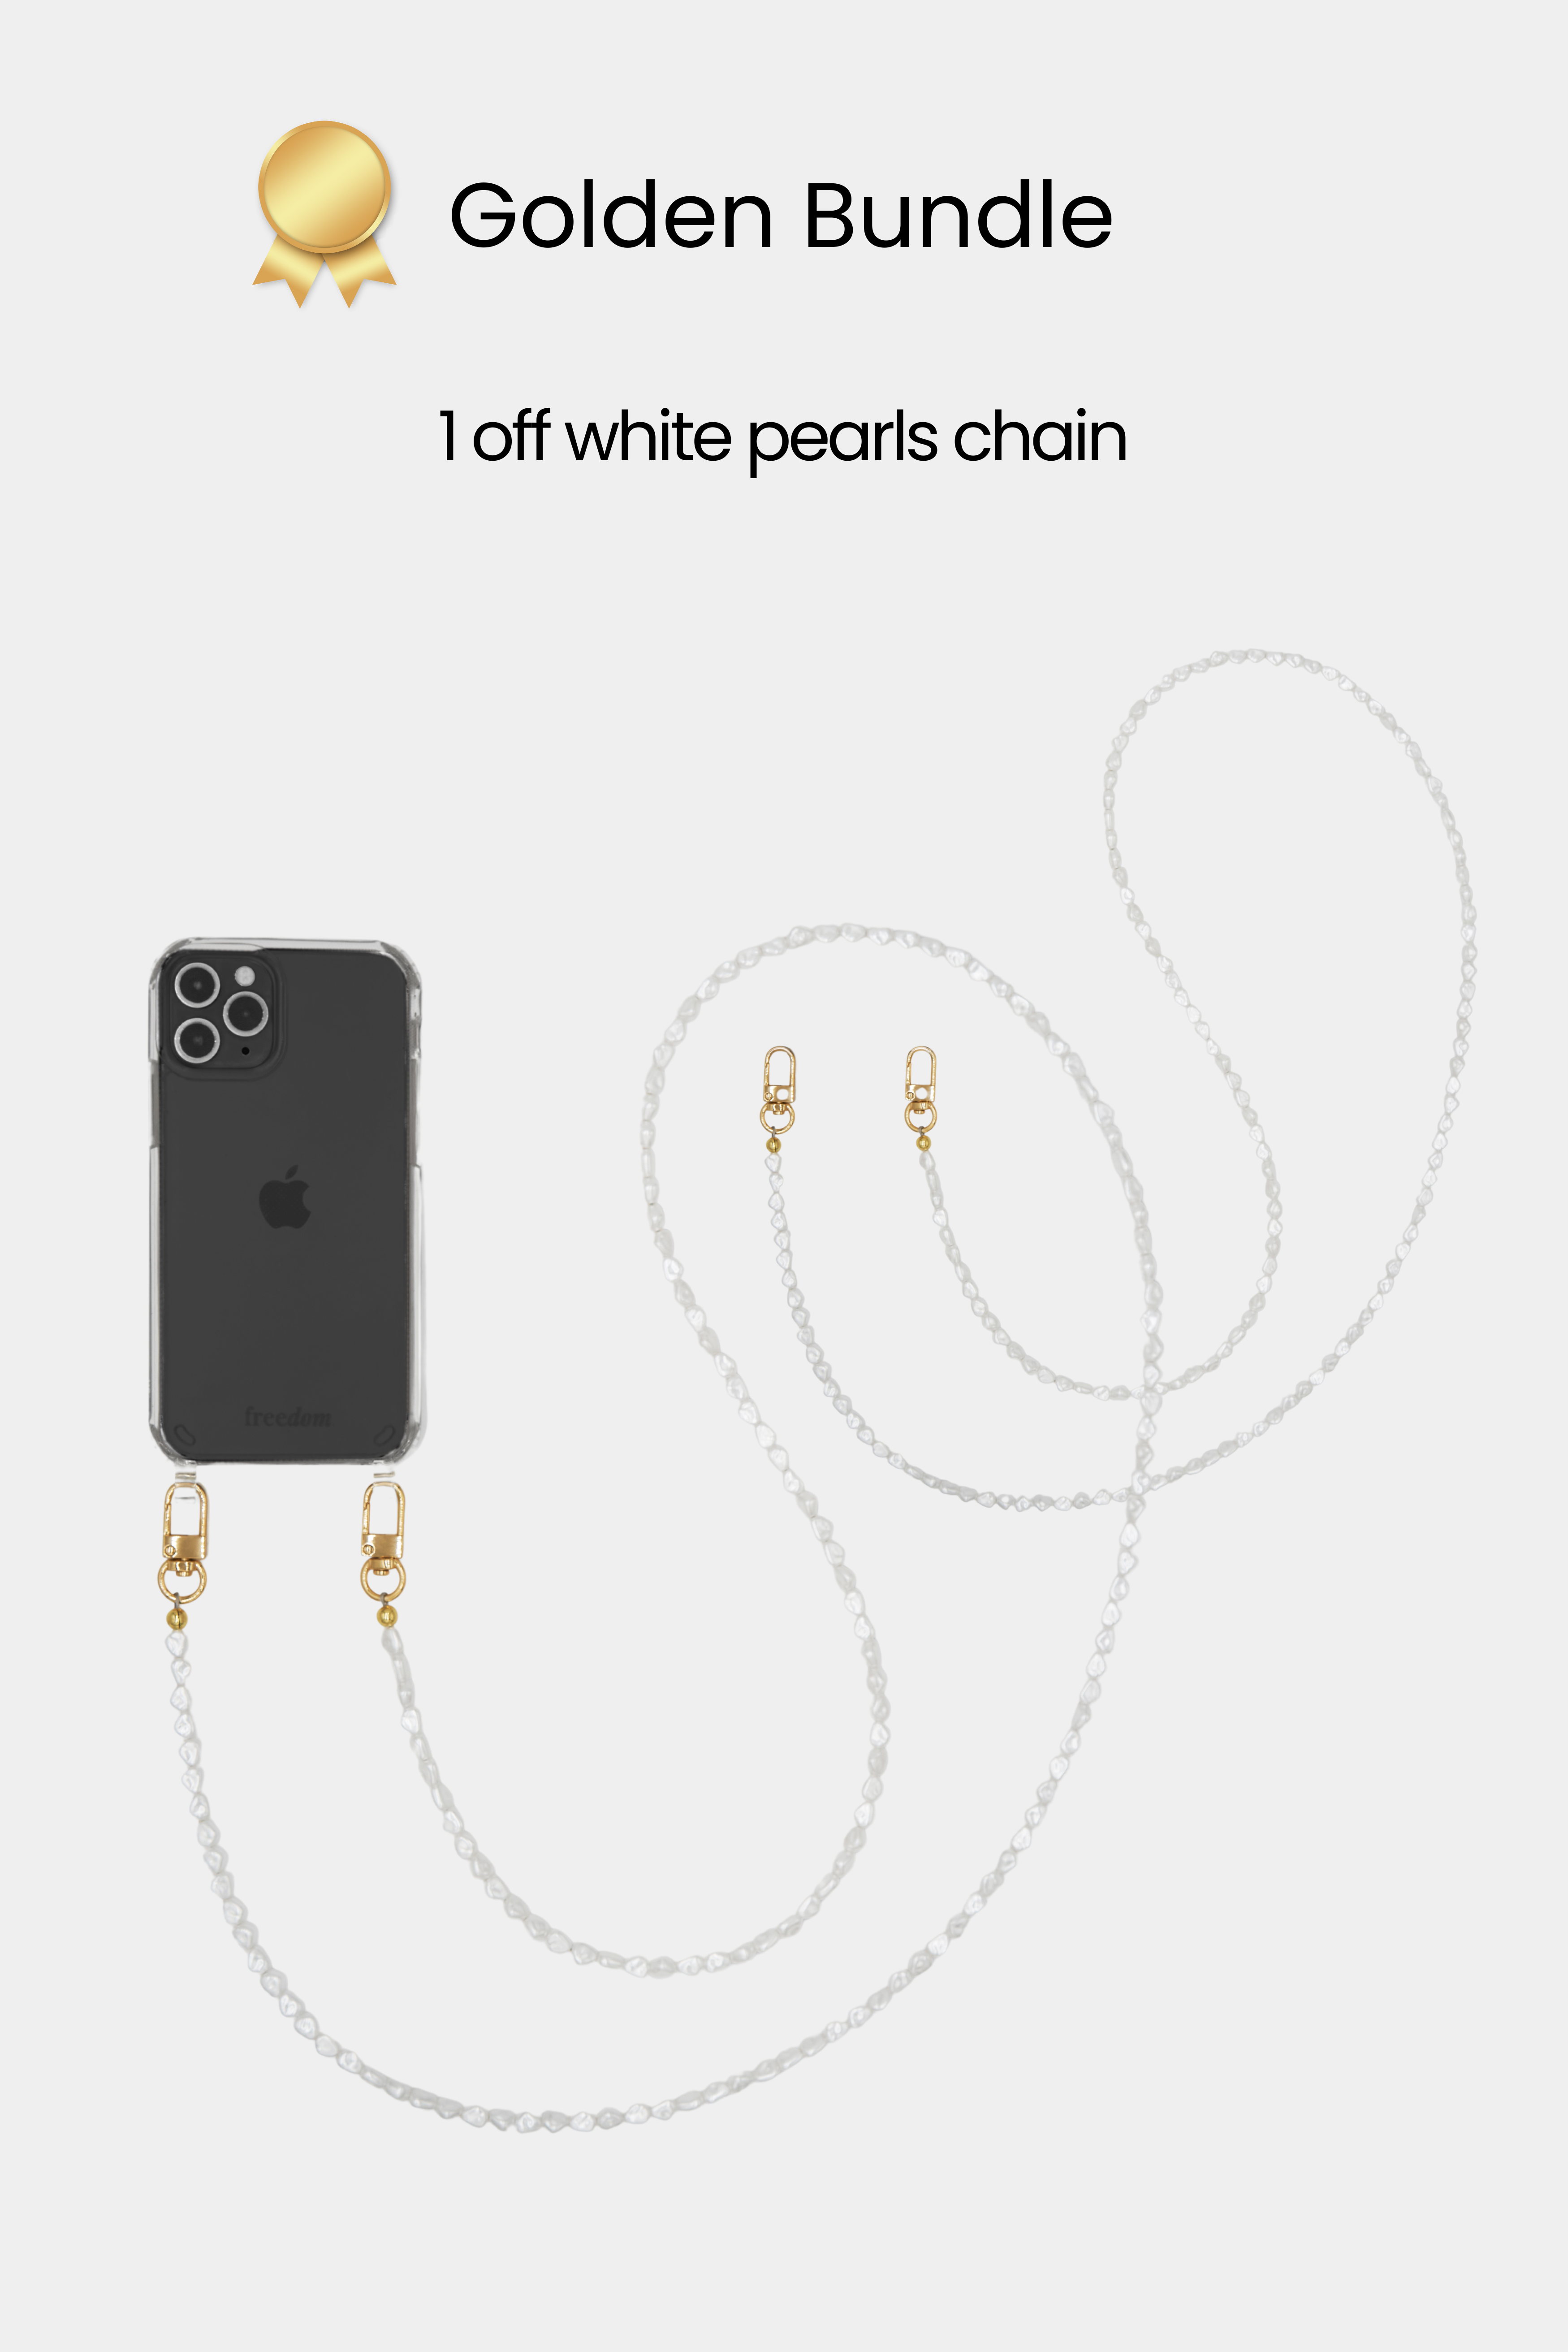 Golden Bundle - 2 chains + 1 strap + 1 phone case